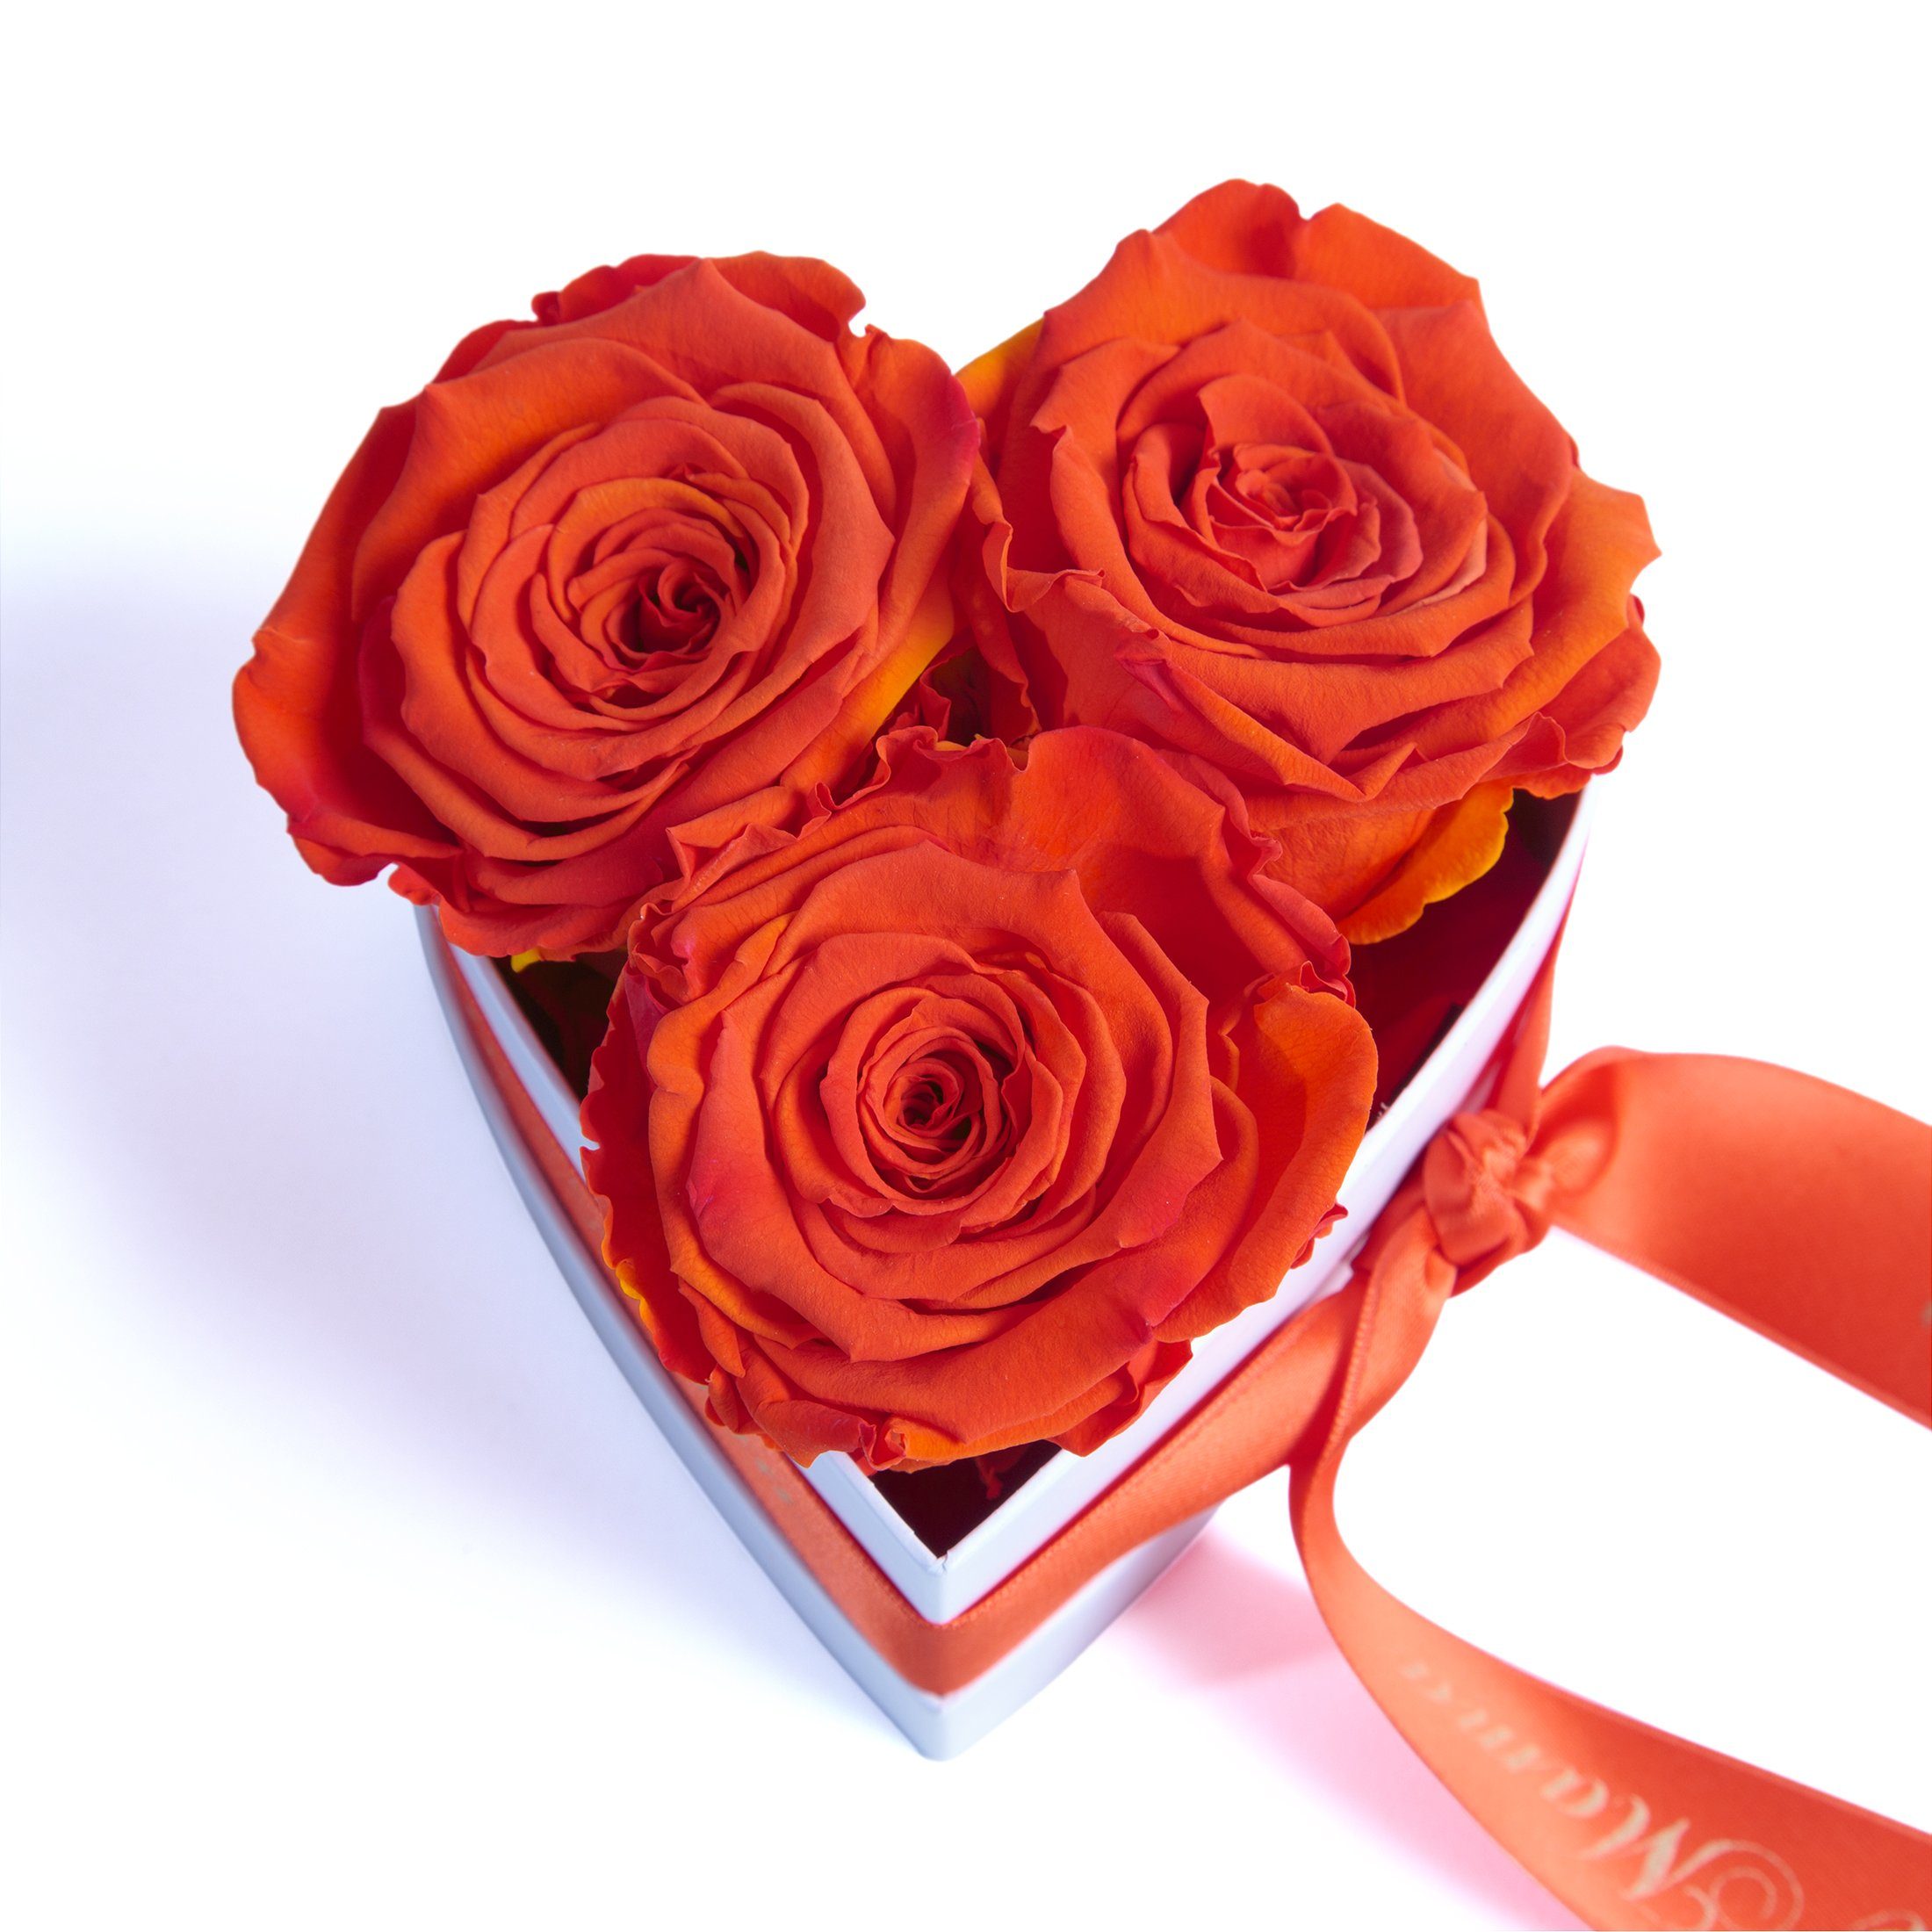 Welt Herz Höhe die Rose, Orange 3 3 cm, haltbar Kunstblume Heidelberg, der für Mama Rosen ROSEMARIE SCHULZ Infinity Jahre echte Geschenk Beste 10 Blumen Rosenbox